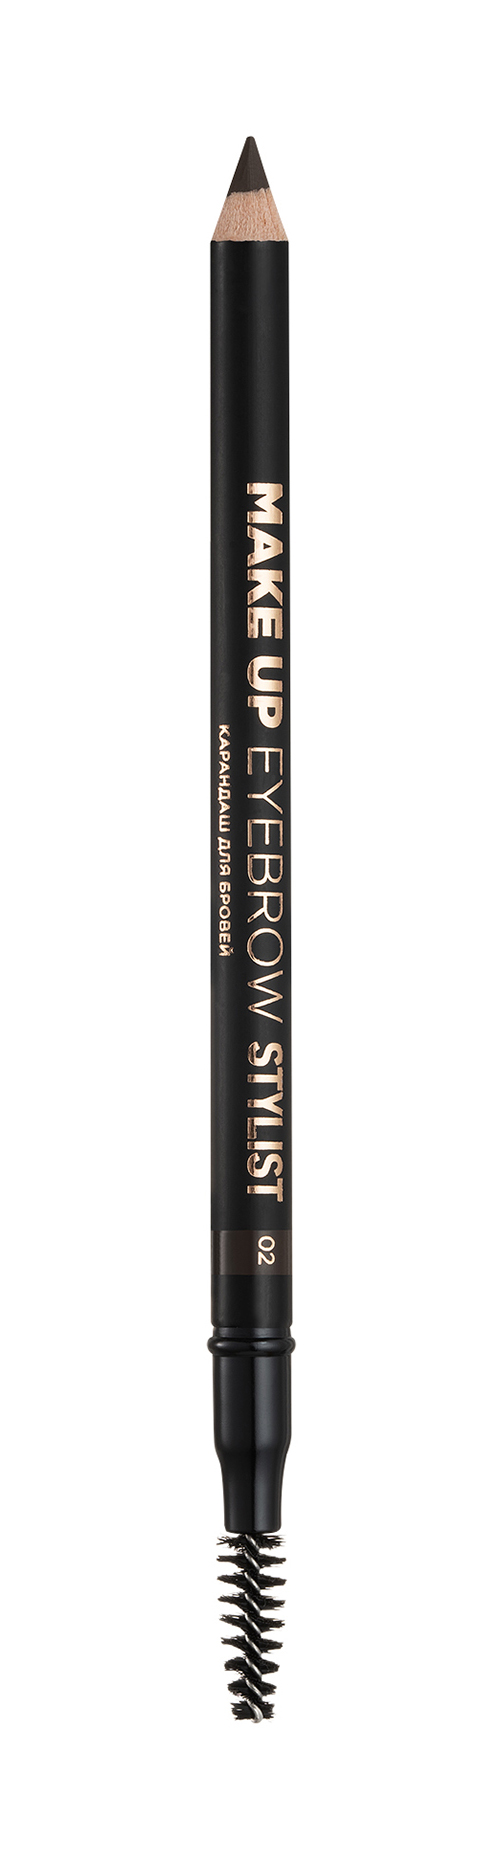 Карандаш для бровей Eva Mosaic Make up Eyebrow Stylist карандаш для бровей make up factory автоматический тон 06 пепельный коричневый 0 09 г